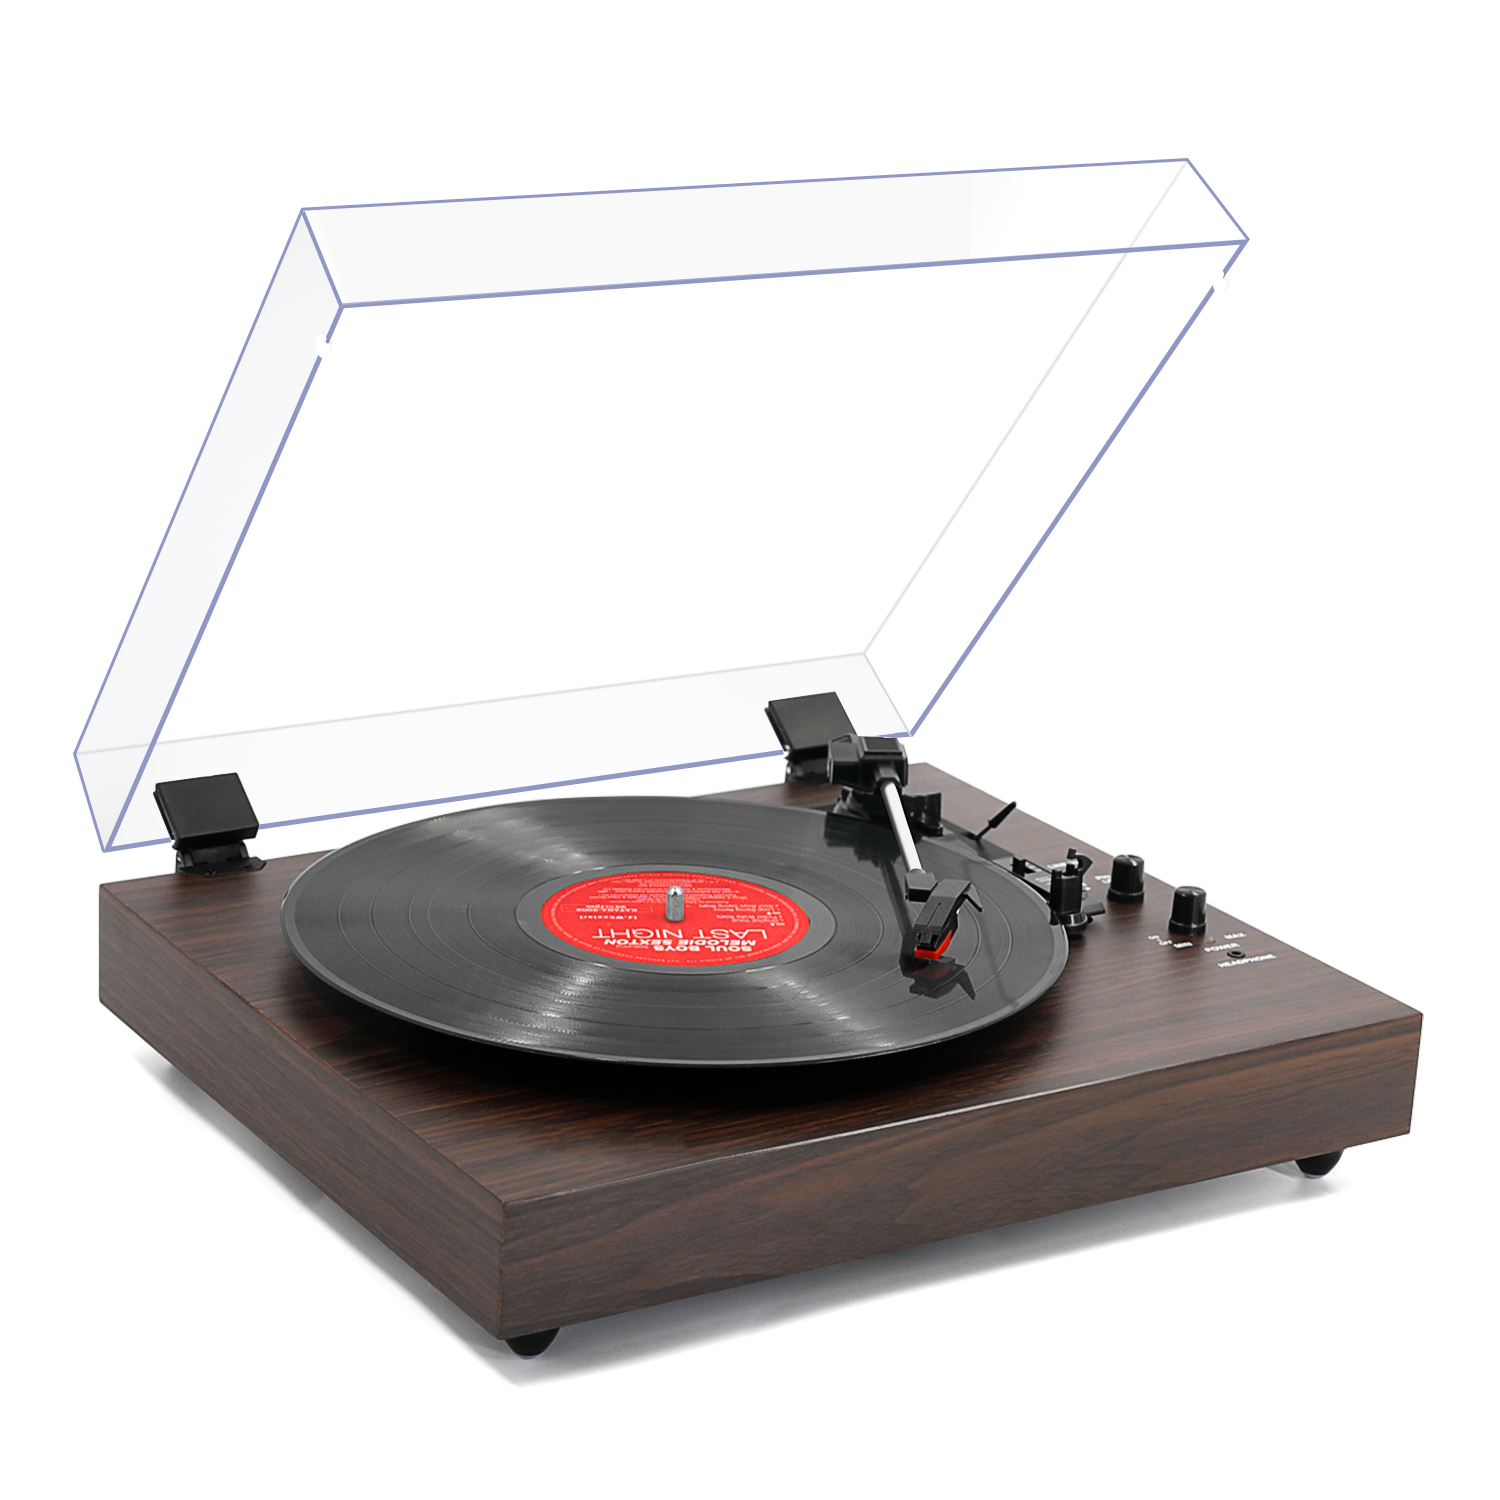 パーティを彩るご馳走や LP No.1 Bluetooth Record Player with Stereo Speakers, 3-Speed  Belt-Drive Turntable for Vinyl Records Wireless Playback and Auto-Stop 